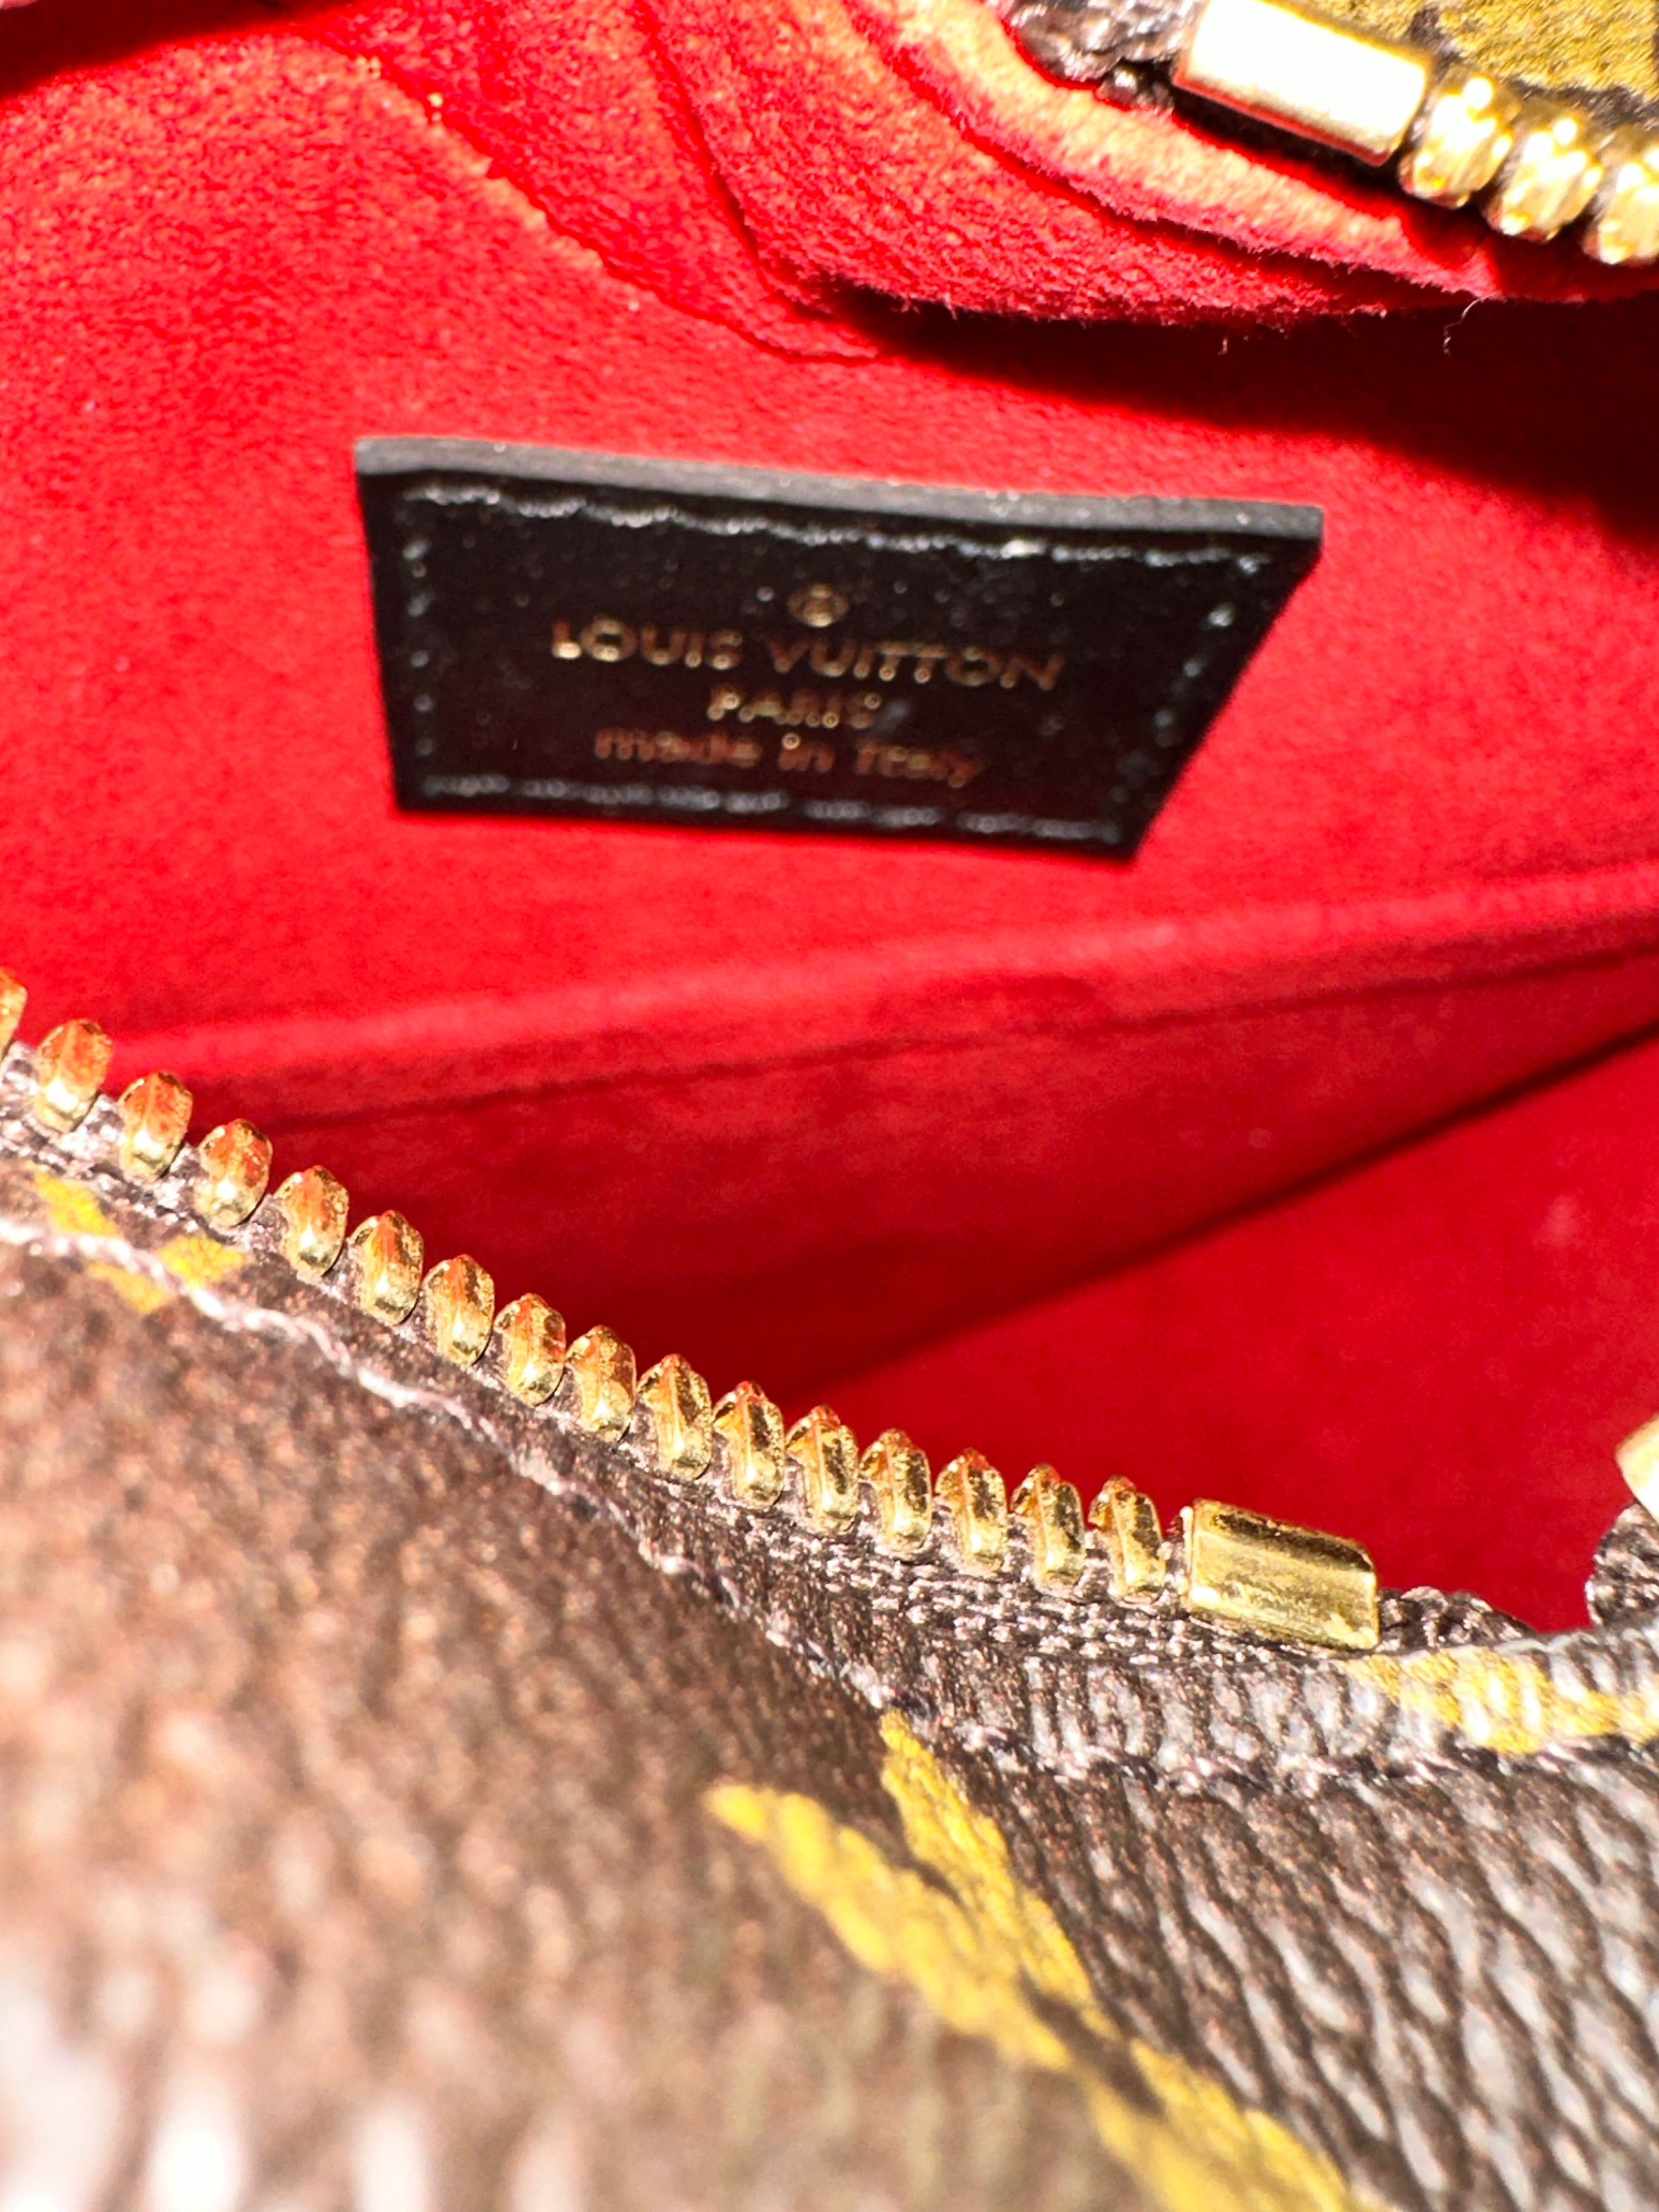 Louis Vuitton Fall In Love Sac Coeur Heart Bag Monogram China